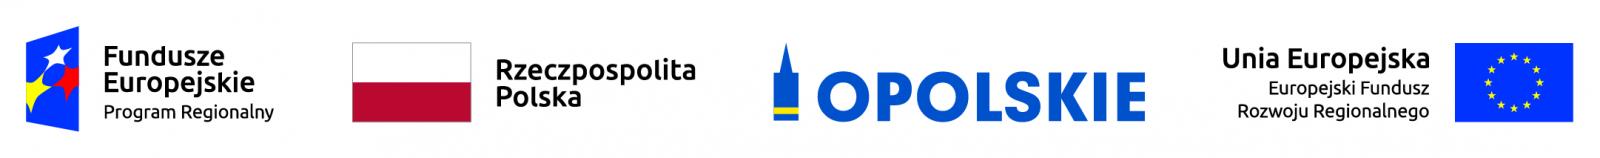 logotypy - dofinansowanie UE